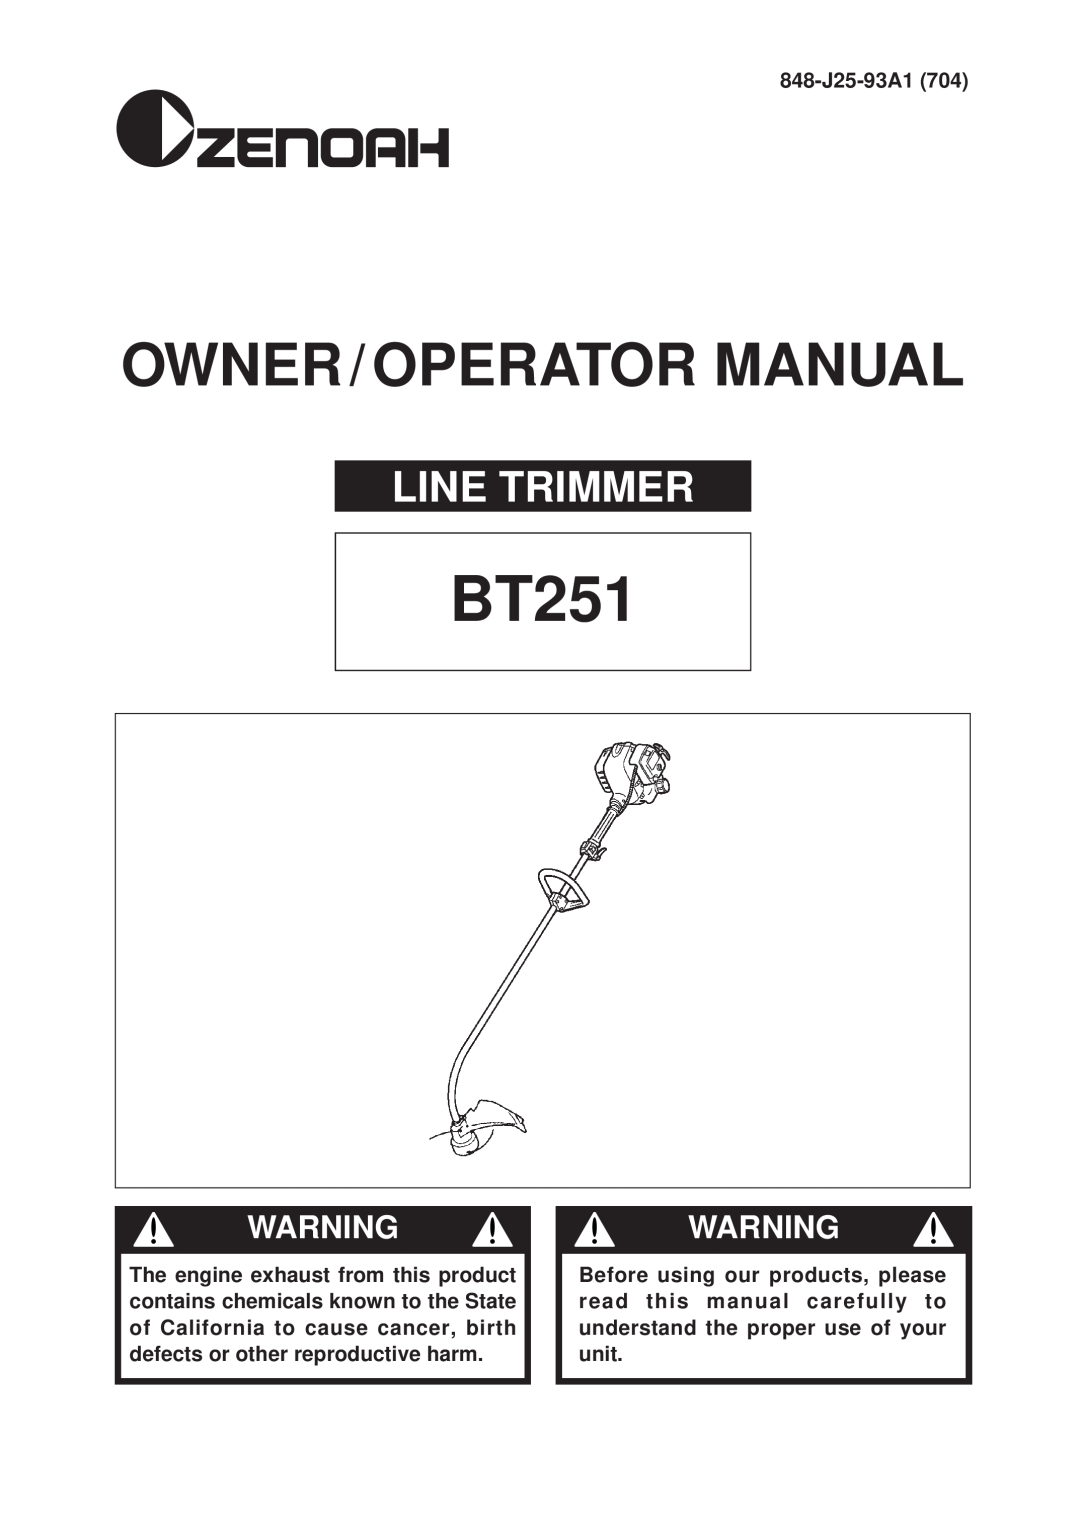 Zenoah BT251 manual Owner / Operator Manual, Line Trimmer 